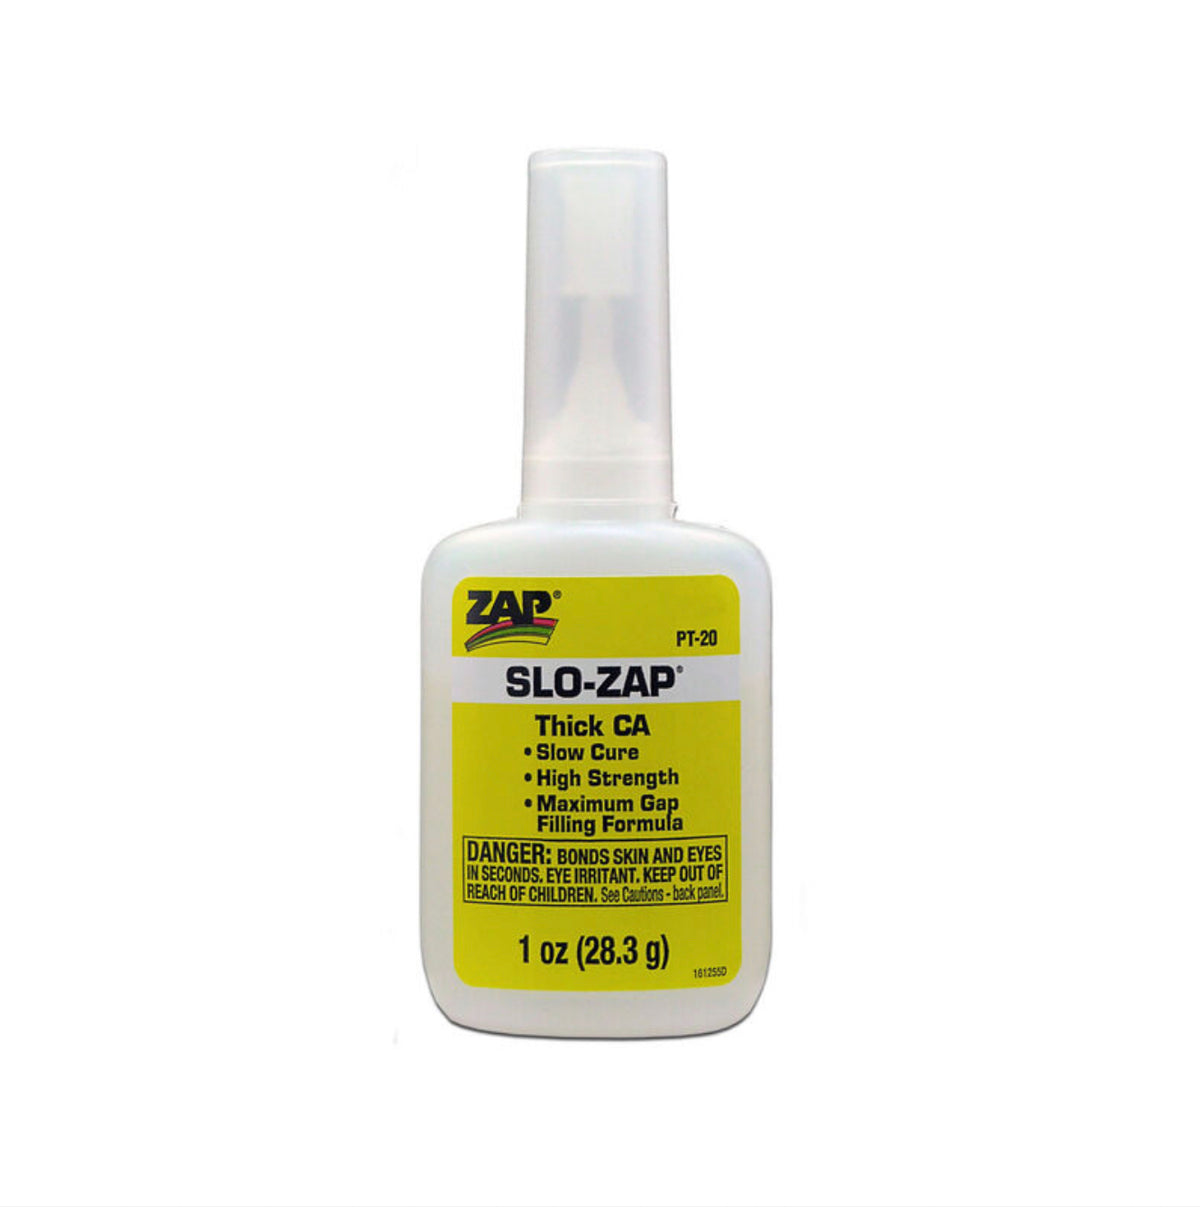 Slo-Zap Thick CA Glue, 1 oz